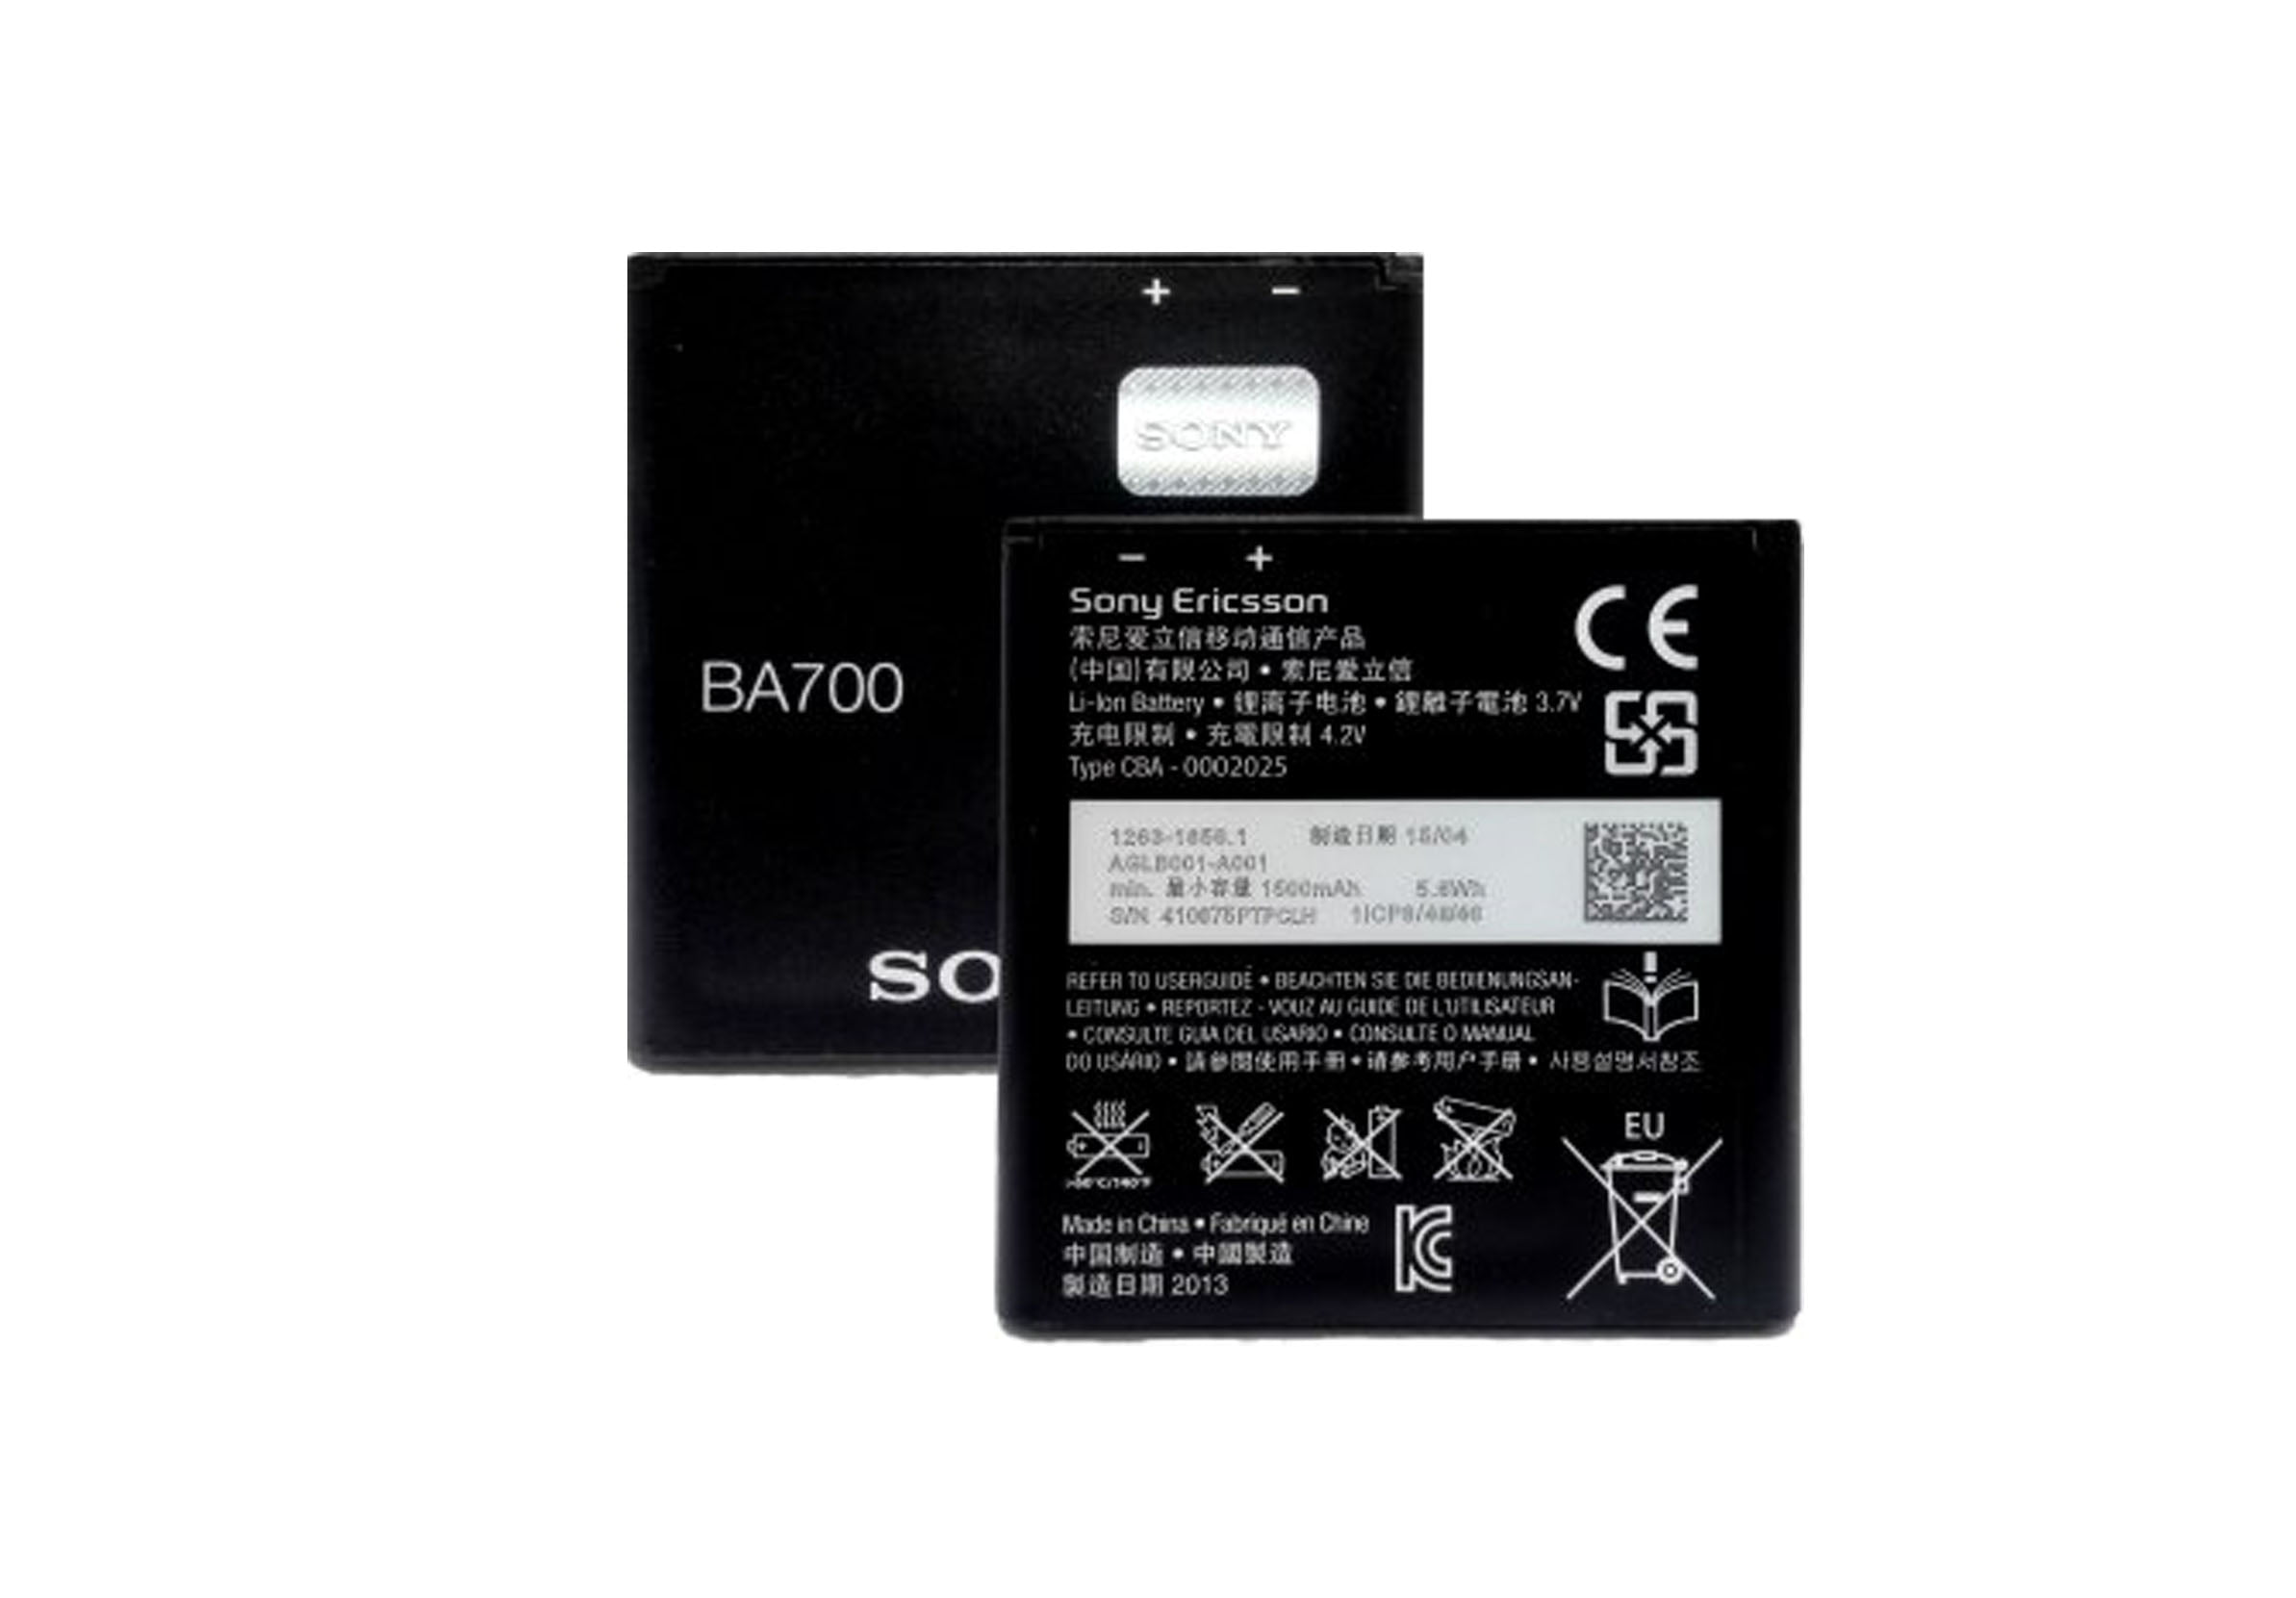 V MT11i Ray ST18i PRO MK16i Bateria BA700 para Sony Xperia Neo MT15i